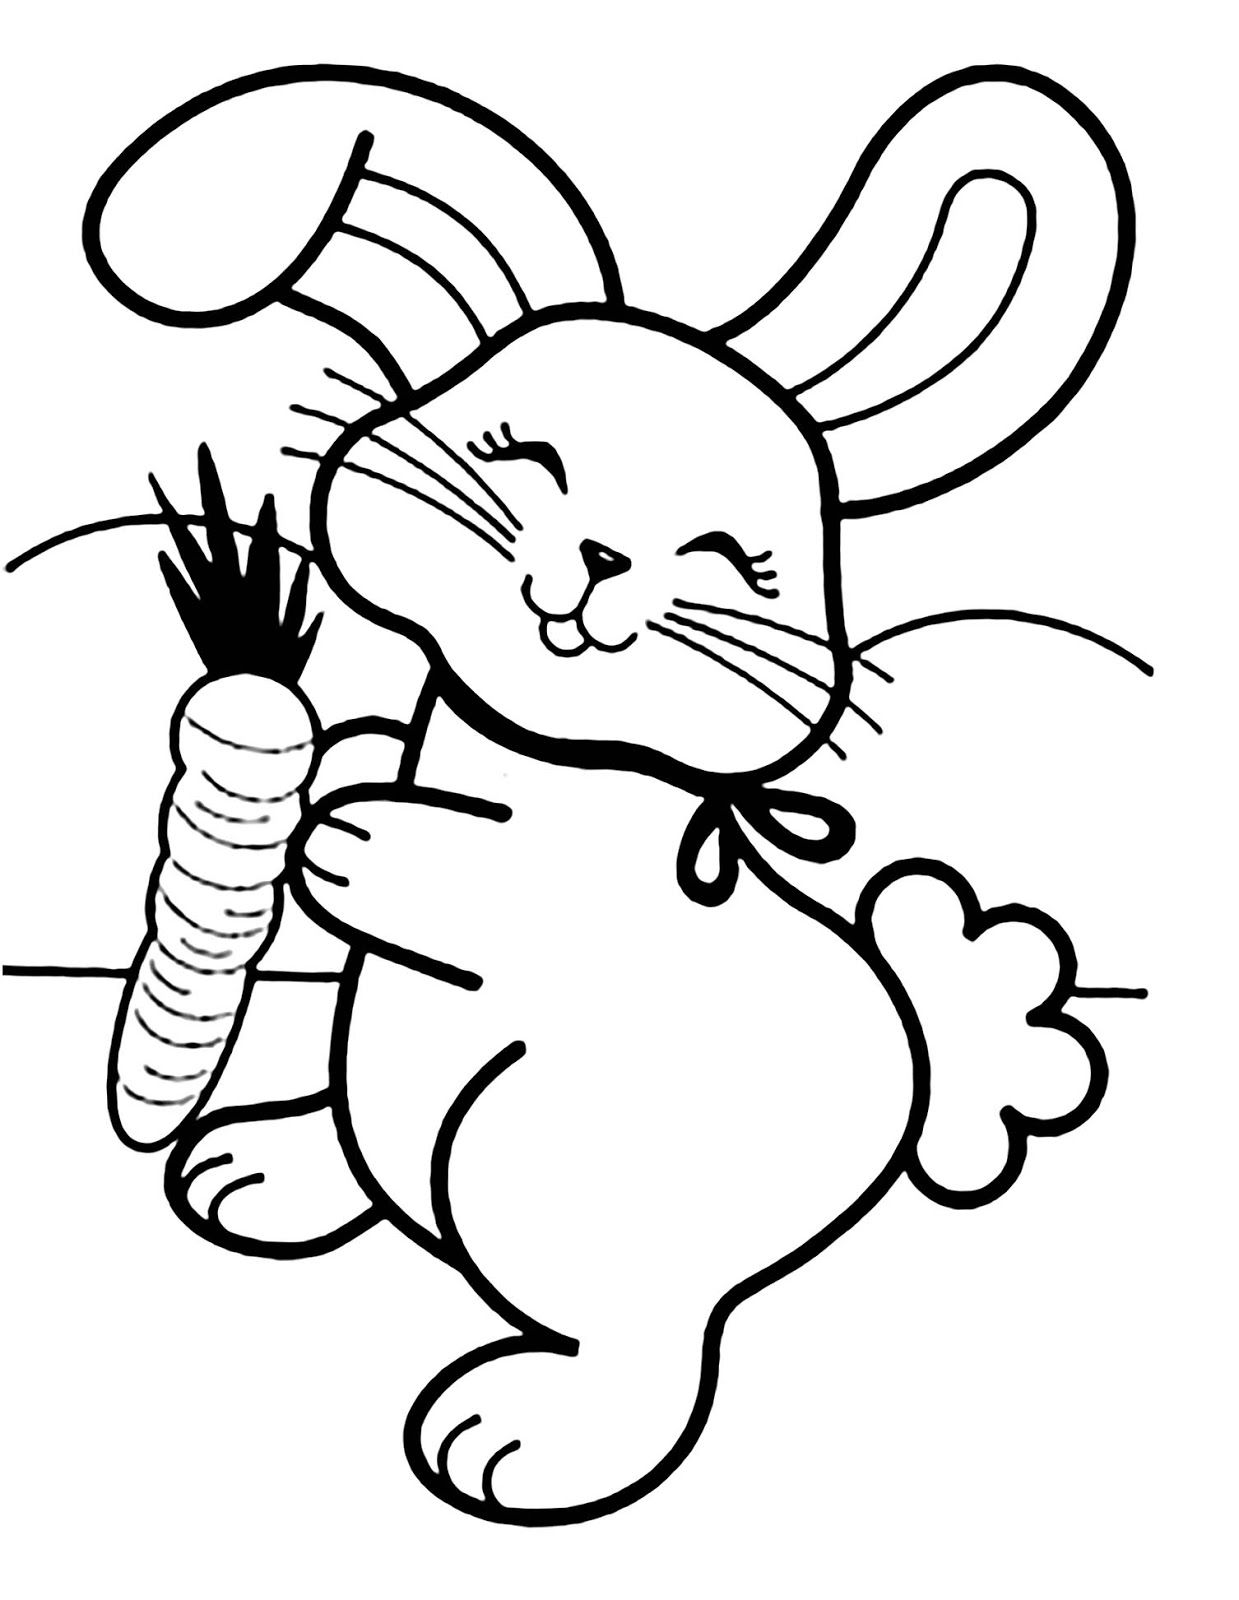 hình vẽ con thỏ đơn giản